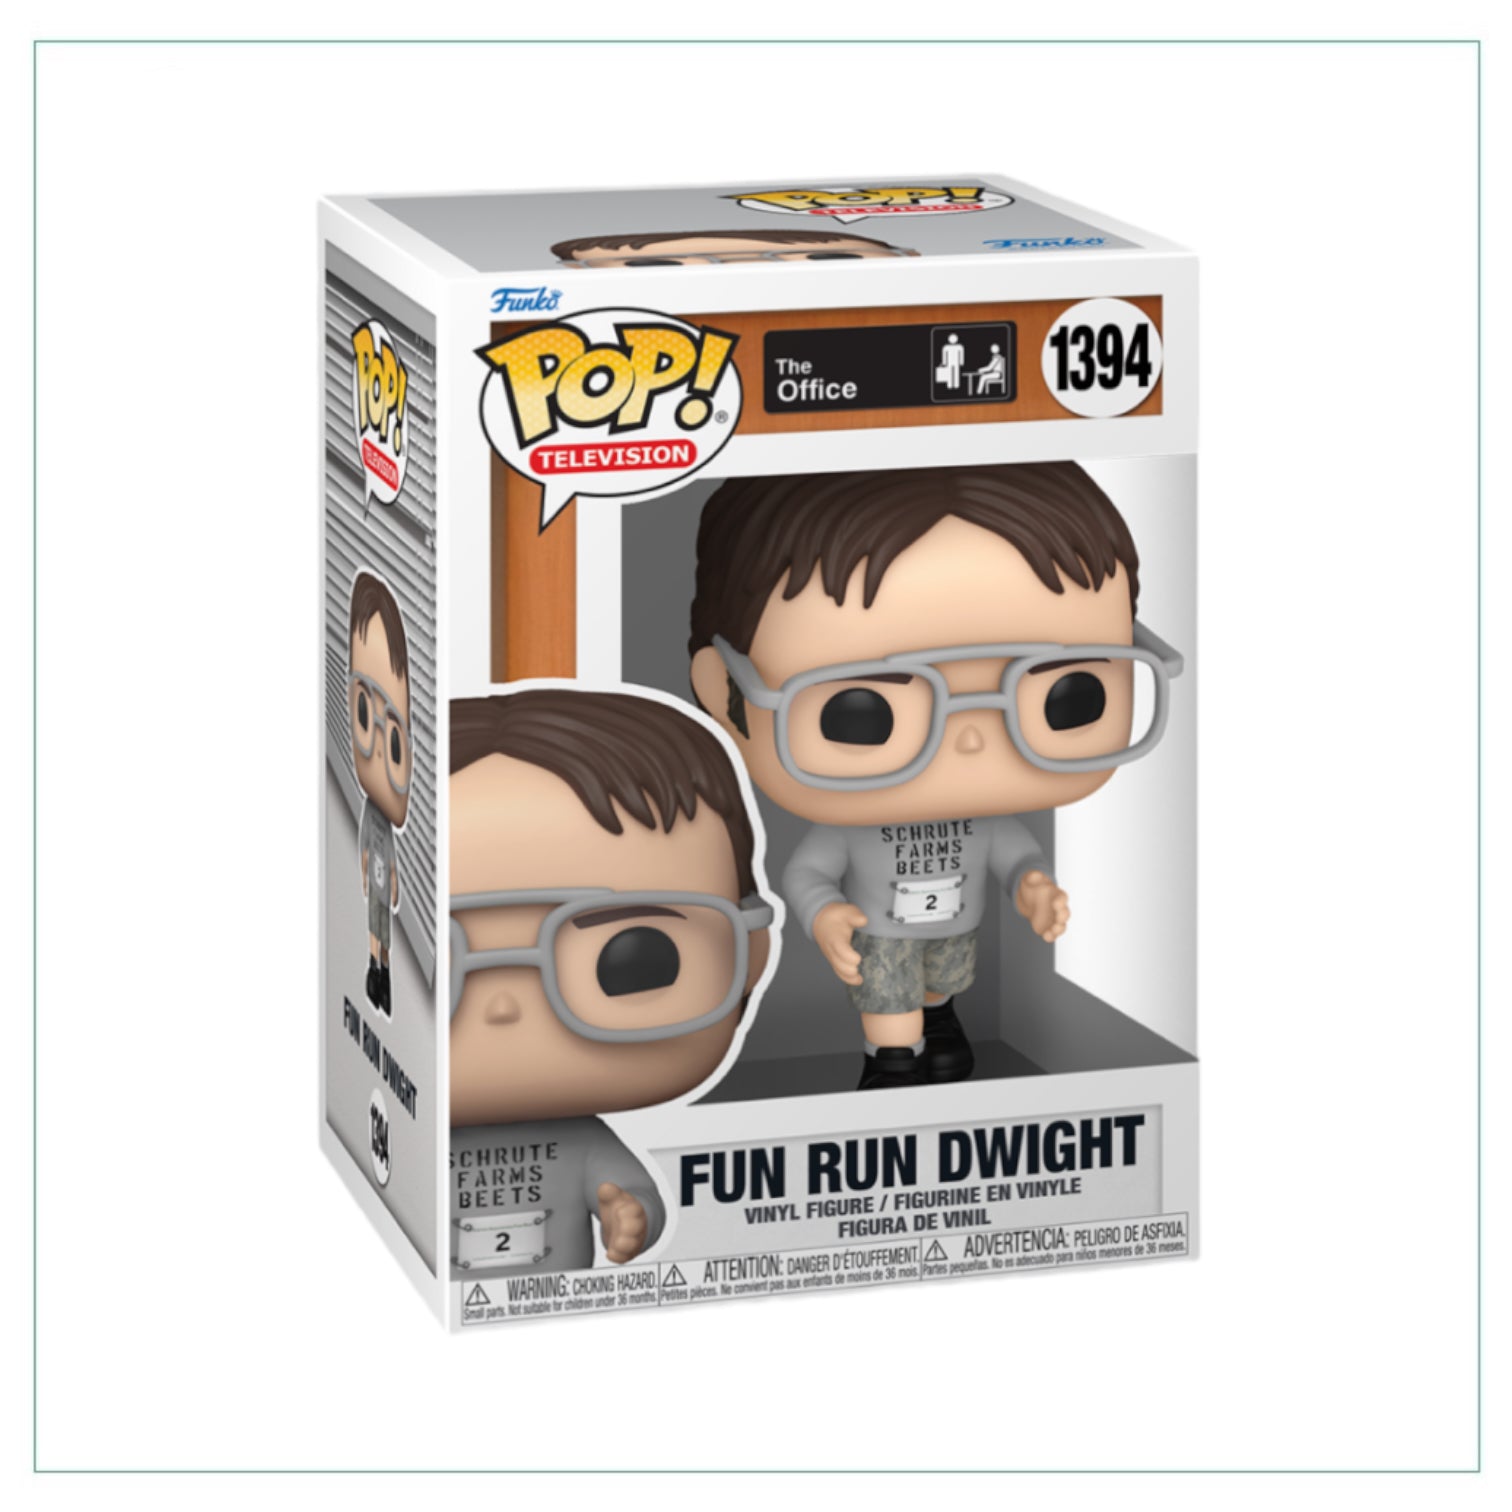 Fun Run Dwight #1394 Funko Pop! The Office